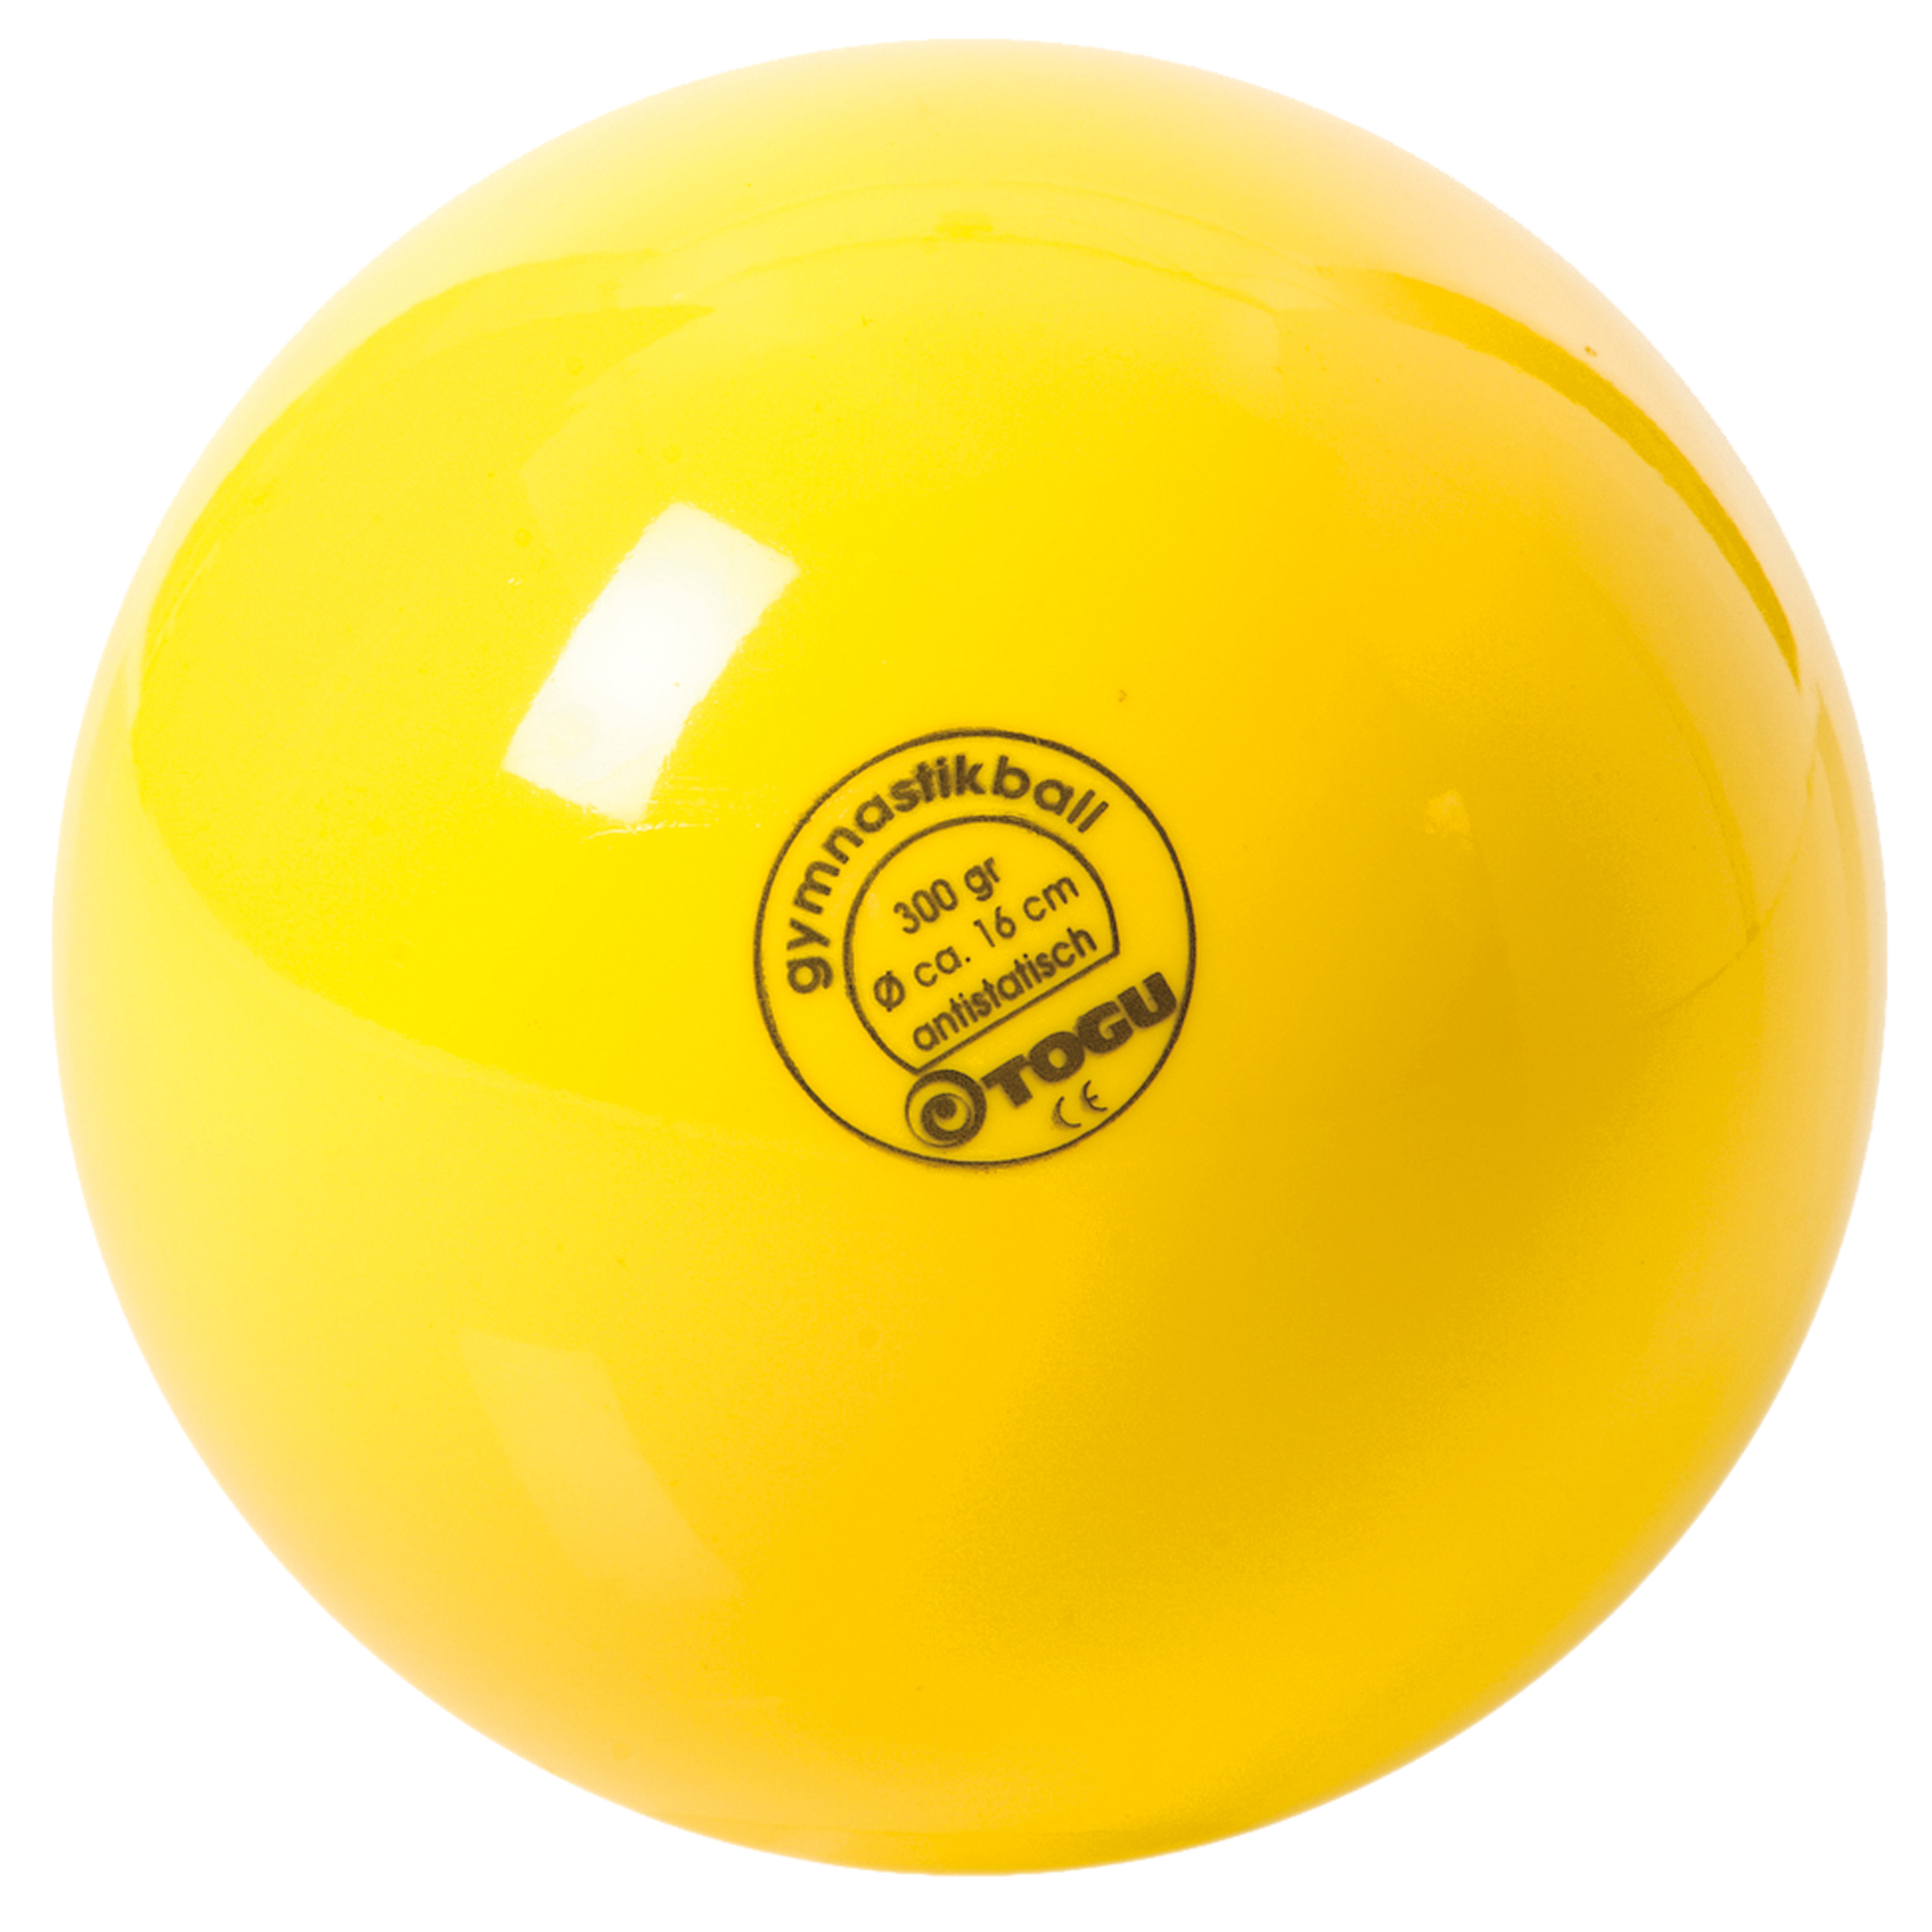 Gymnastikball 'Standard - gelb', Ø 16 cm, 300 g